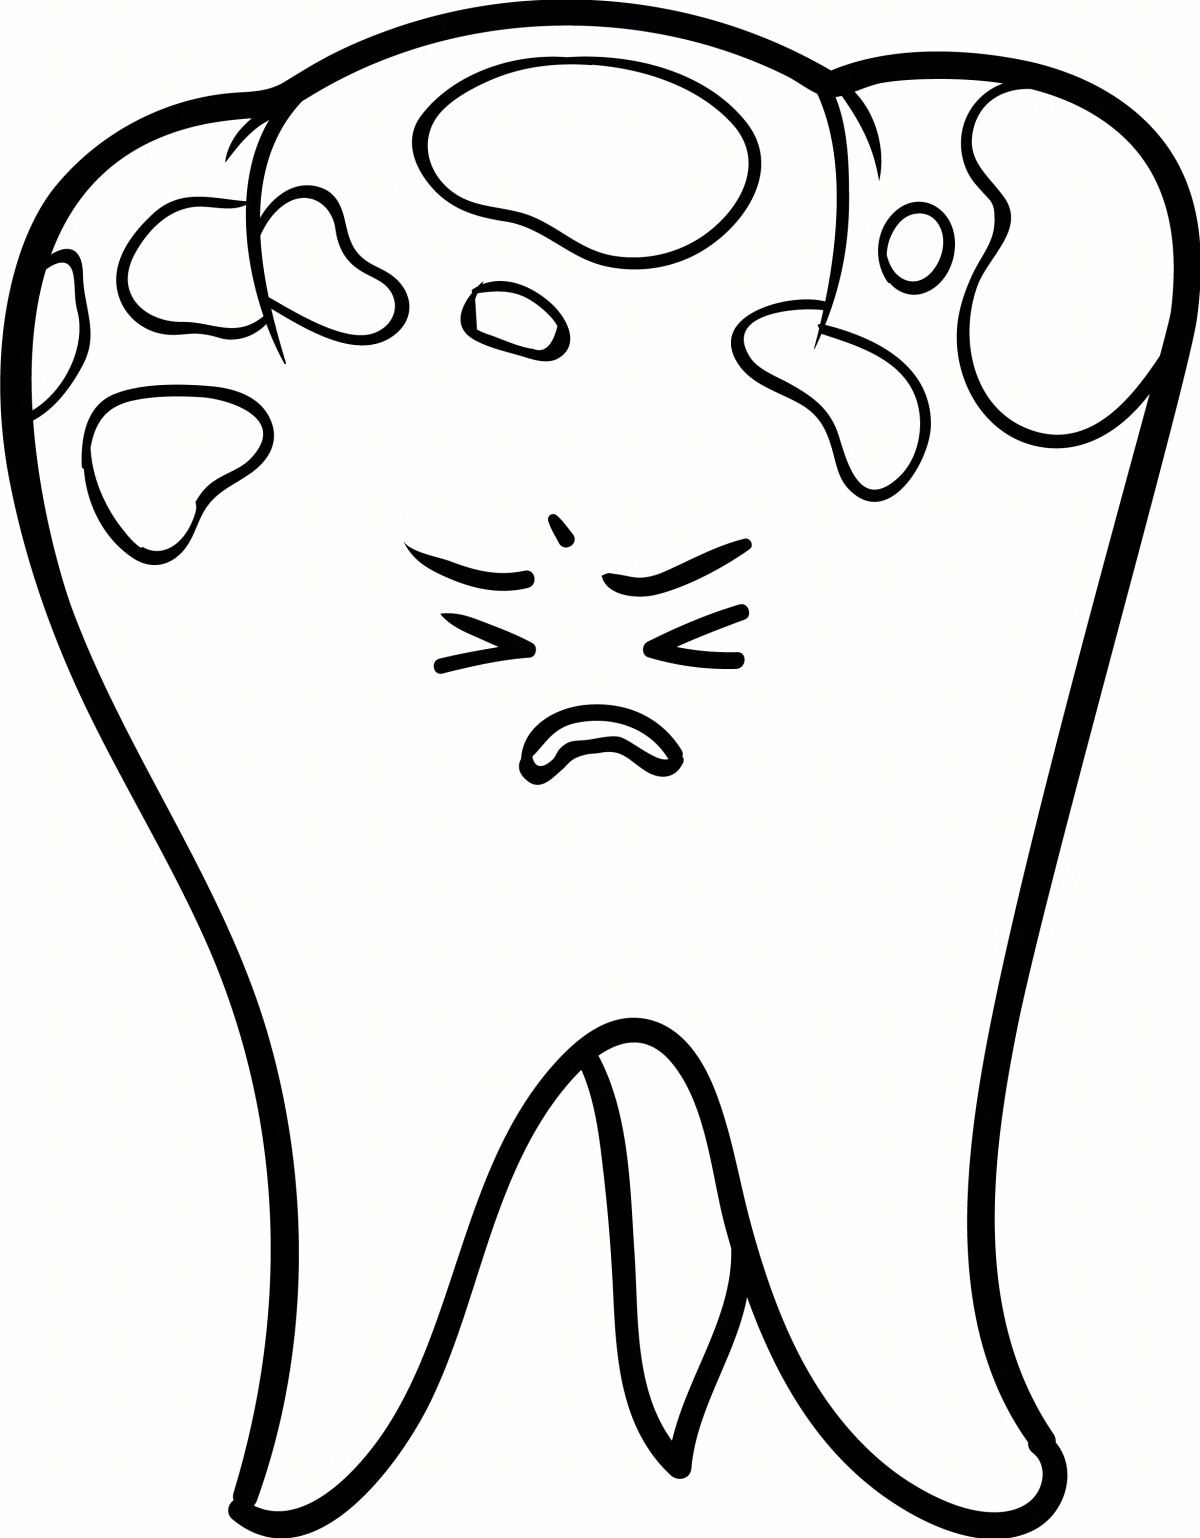 冷光牙齿美白的效果图(氟斑牙)-赵振的博客-KQ88口腔博客